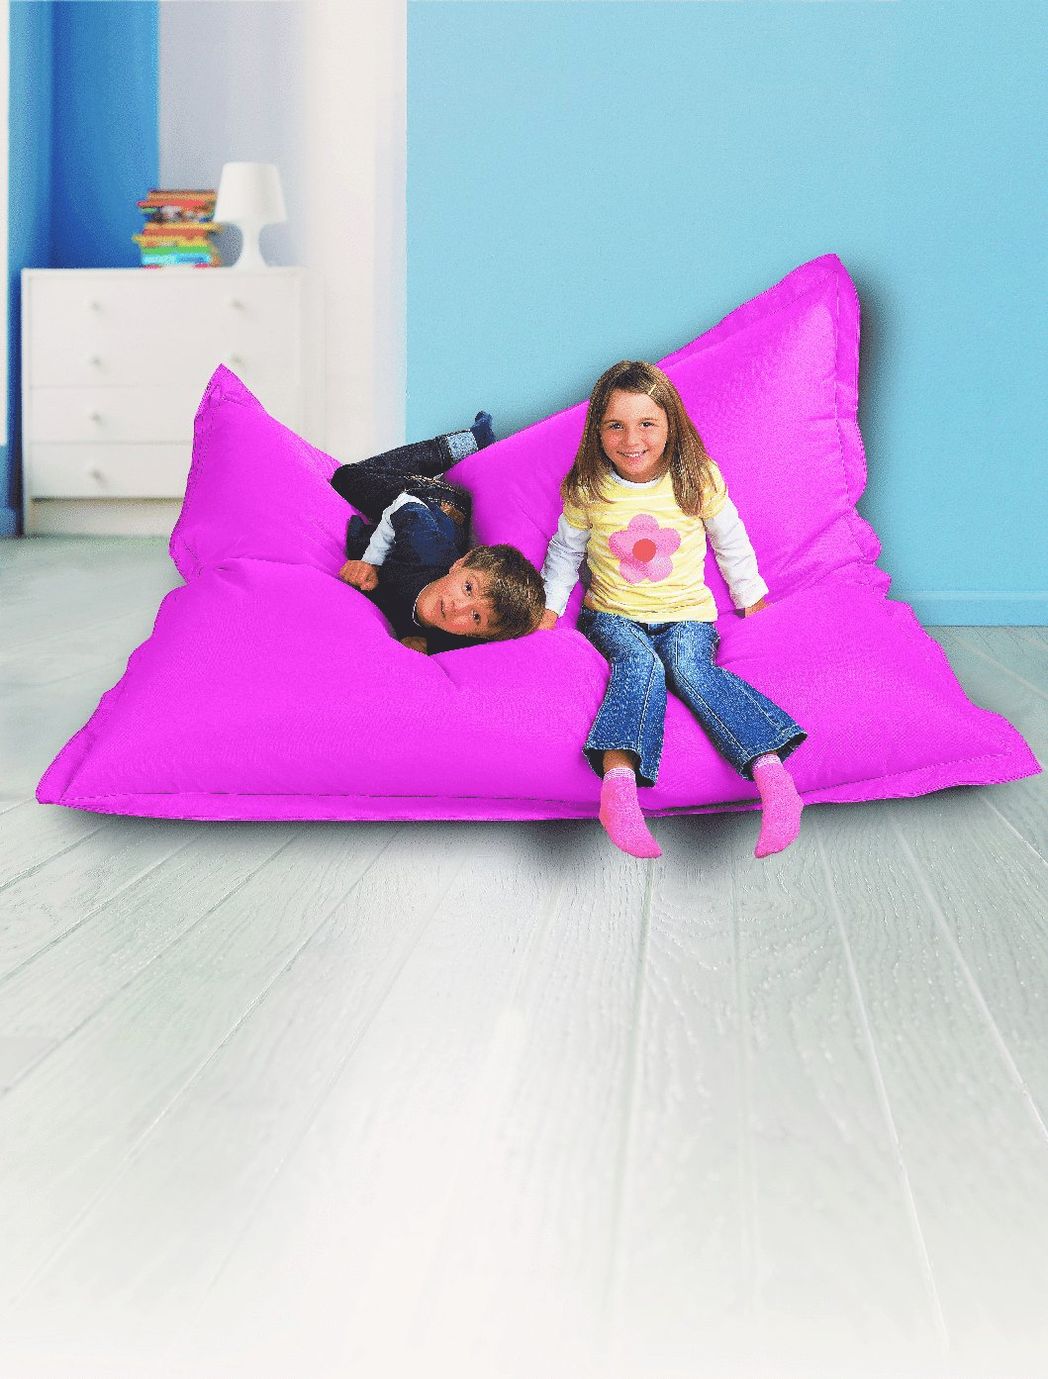 Sitzsack Big Bag Farbe: pink jetzt bei Weltbild.de bestellen